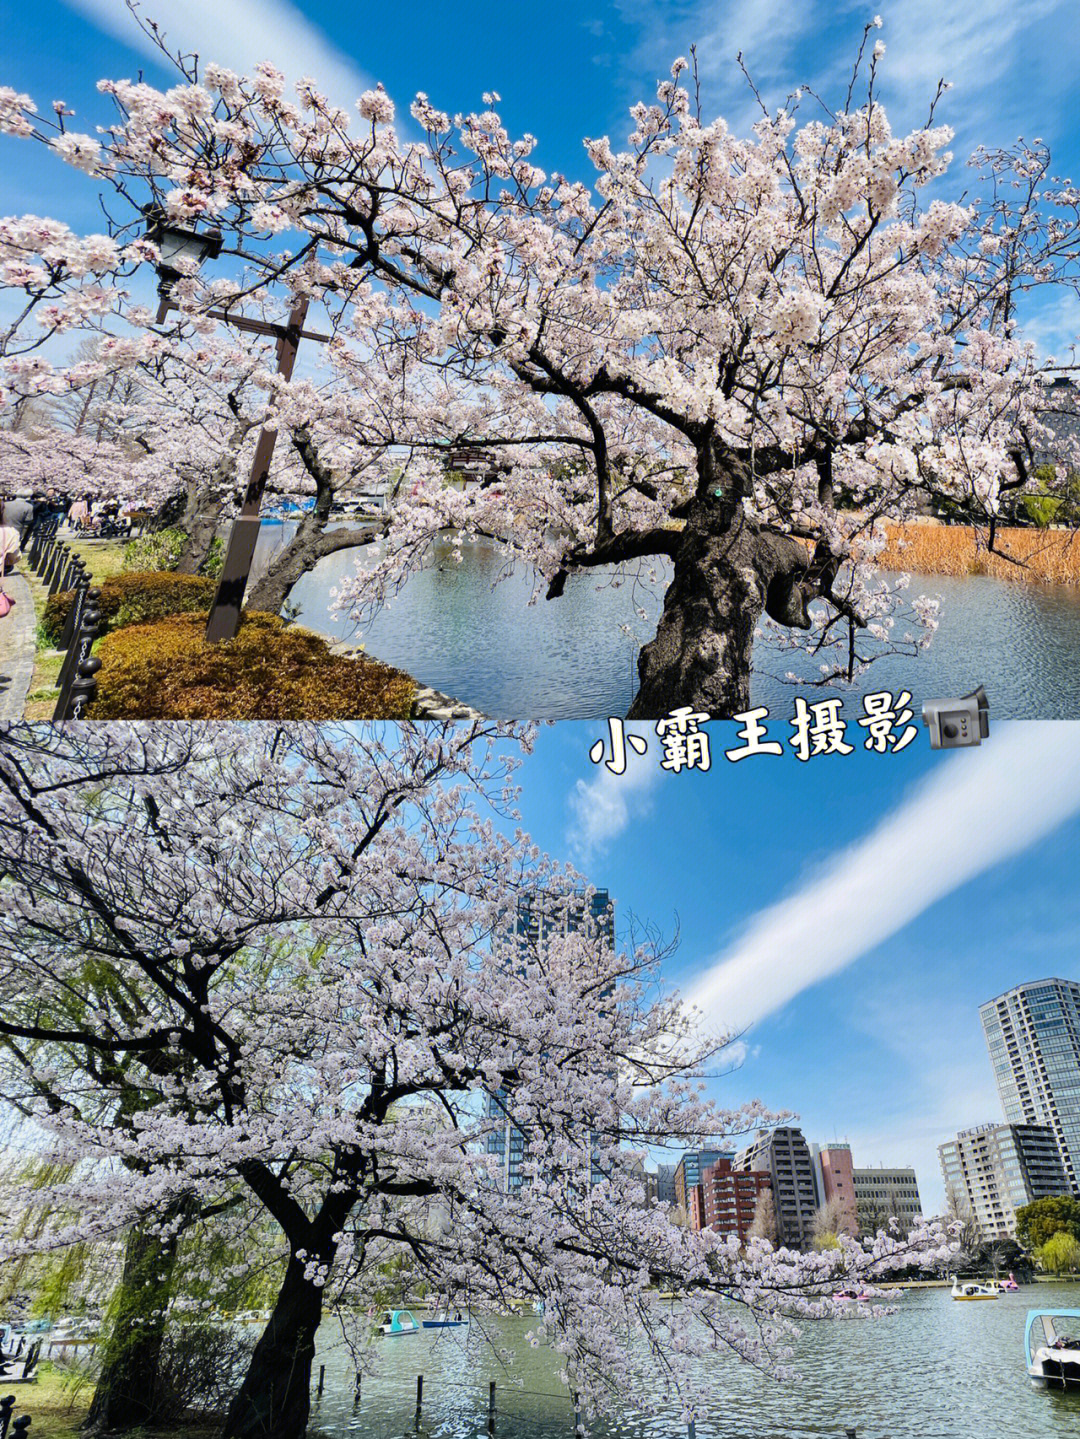 上野公园的樱花已满开啦赶紧拍照打卡吧